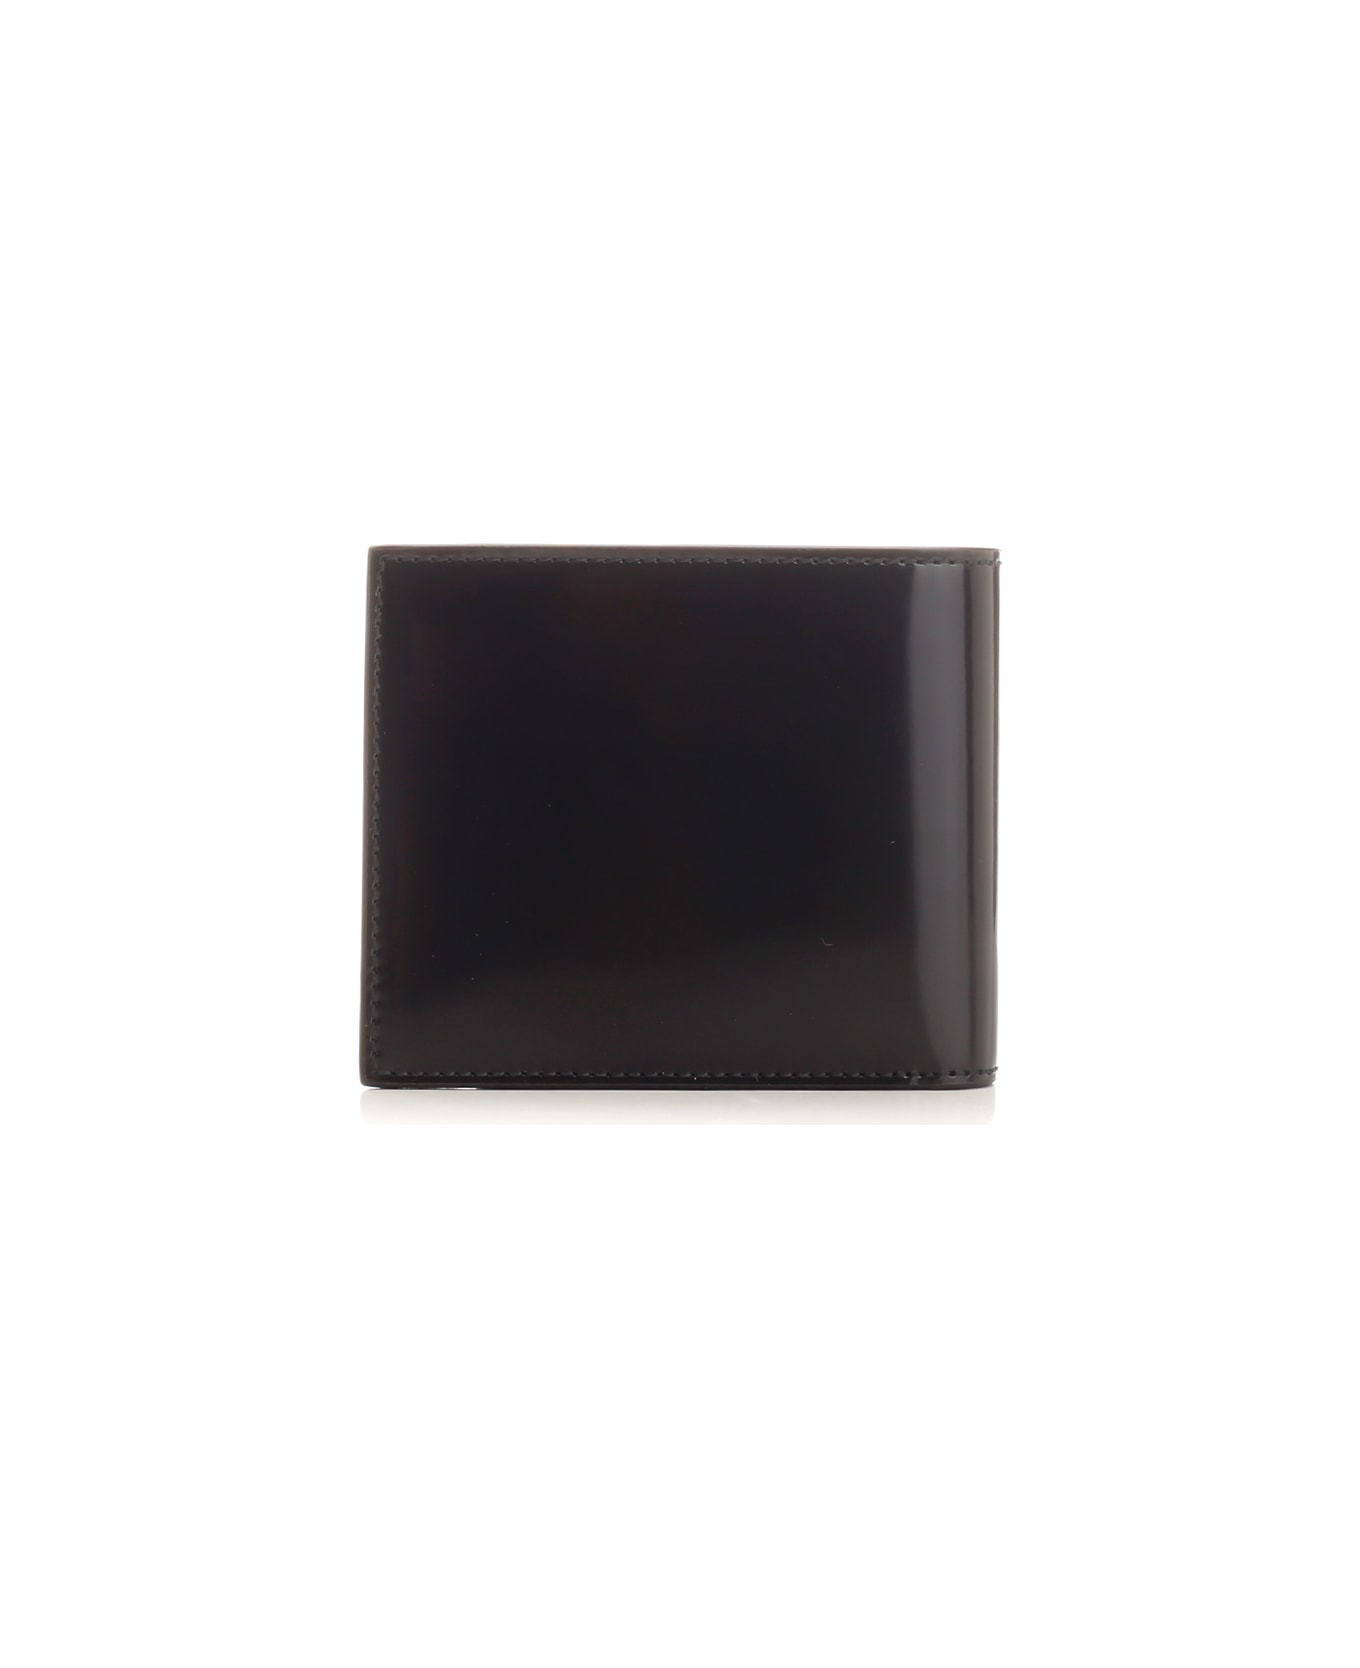 Ferragamo Black Wallet With Logo - BLACK